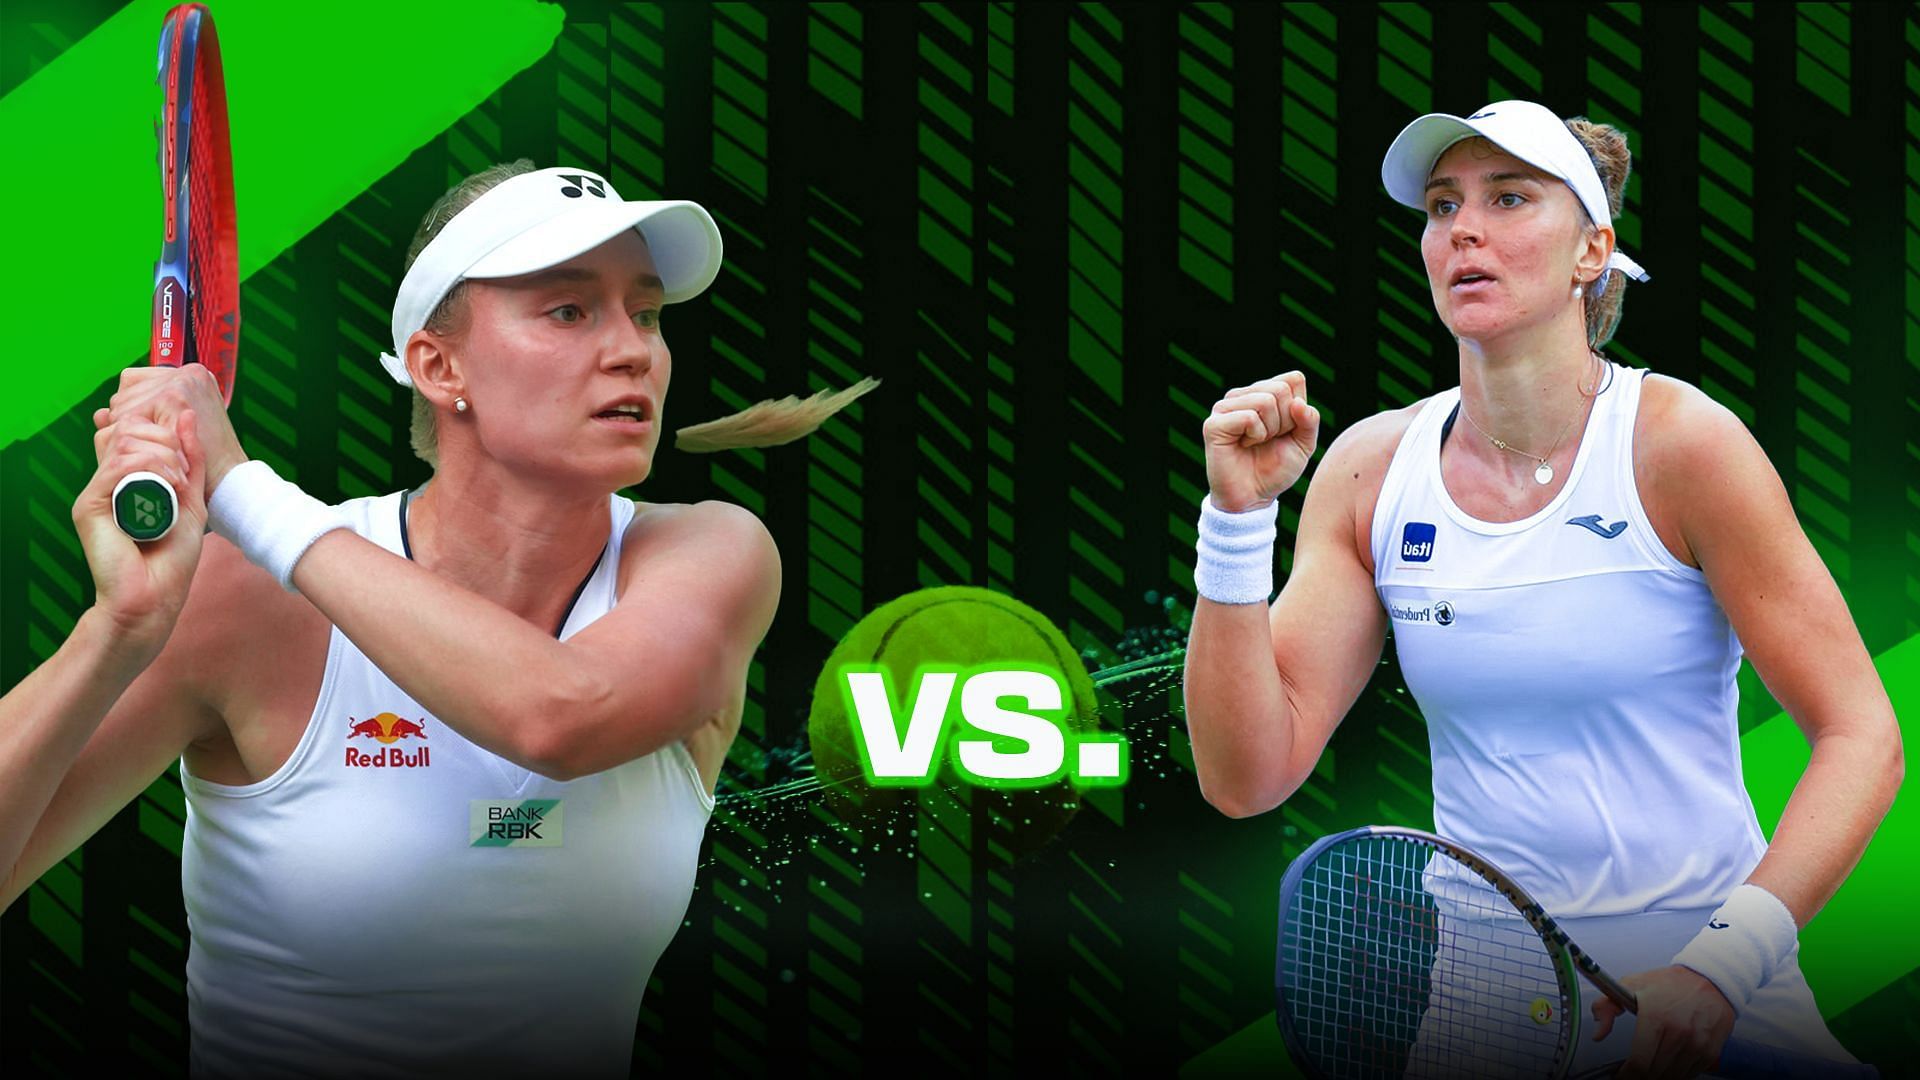 Elena Rybakina vs Beatriz Haddad Maia is one of the fourth-round matches at the 2023 Wimbledon Championships